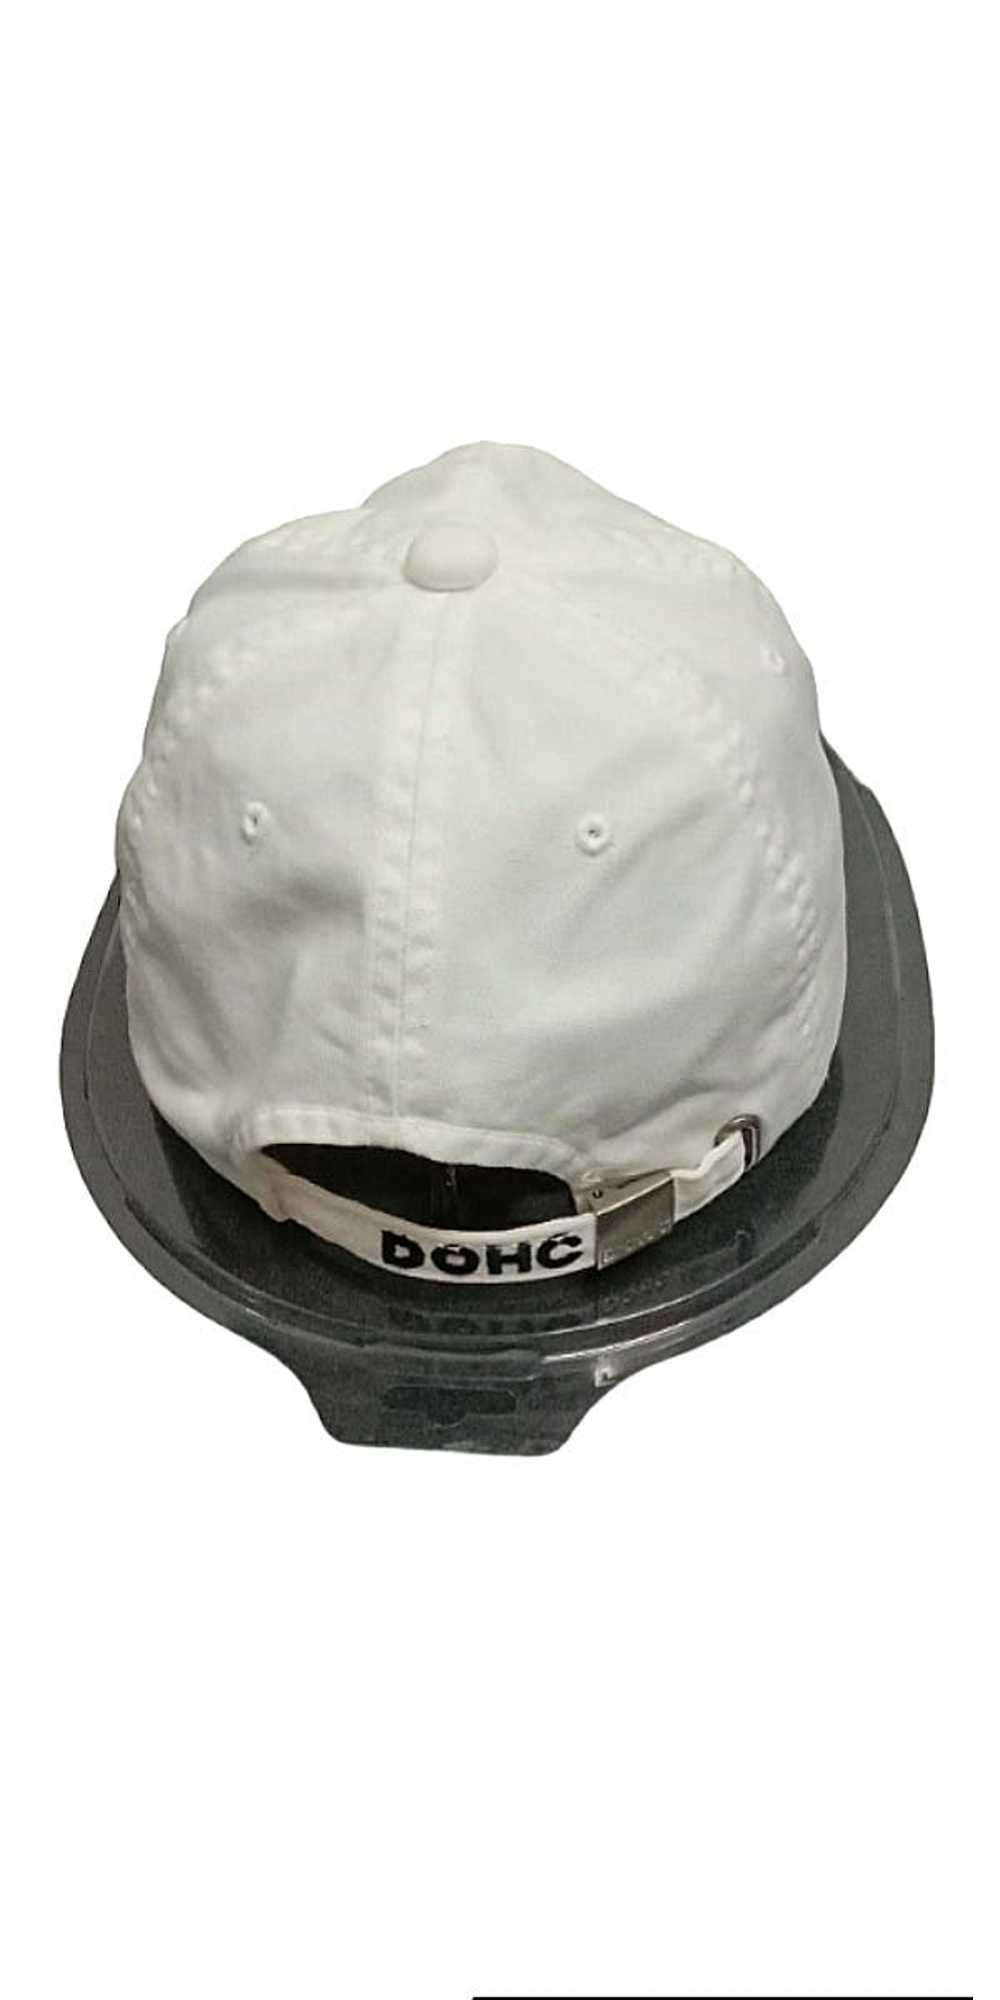 Japanese Brand Original Dohc Revolution cap - image 3